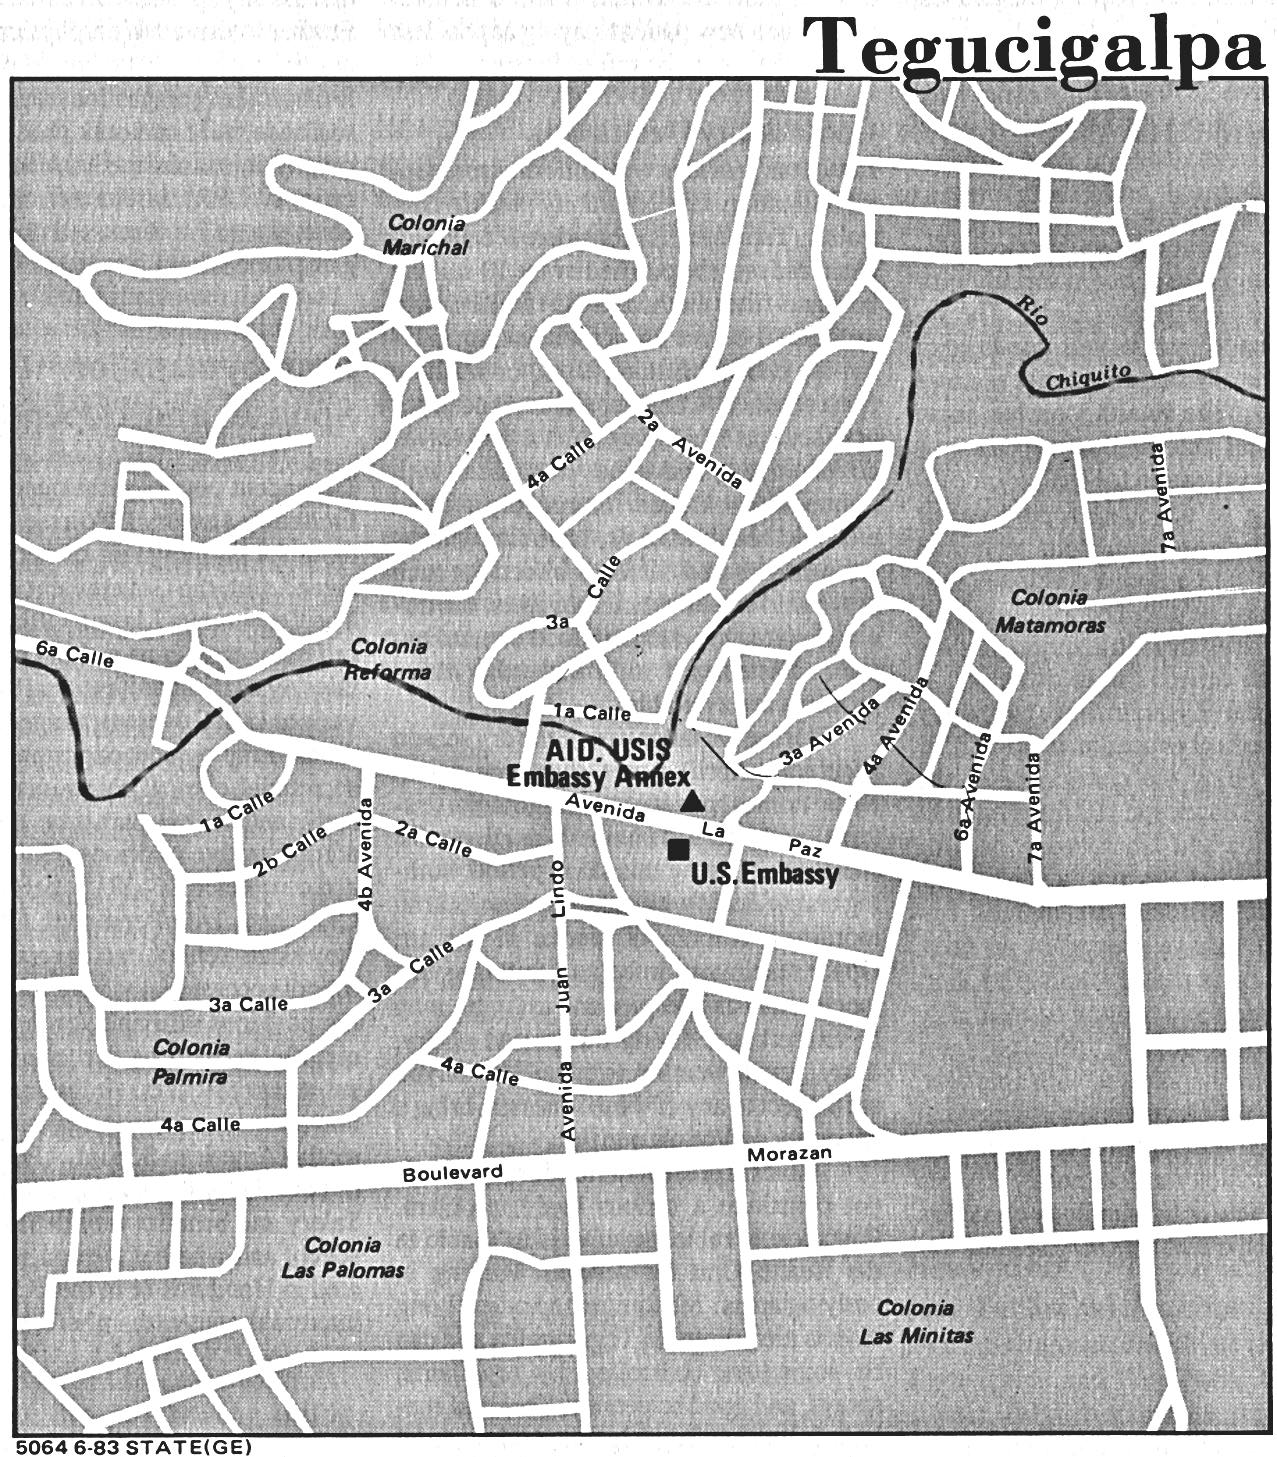 Downtown TegucigalpaŽs Map, Honduras